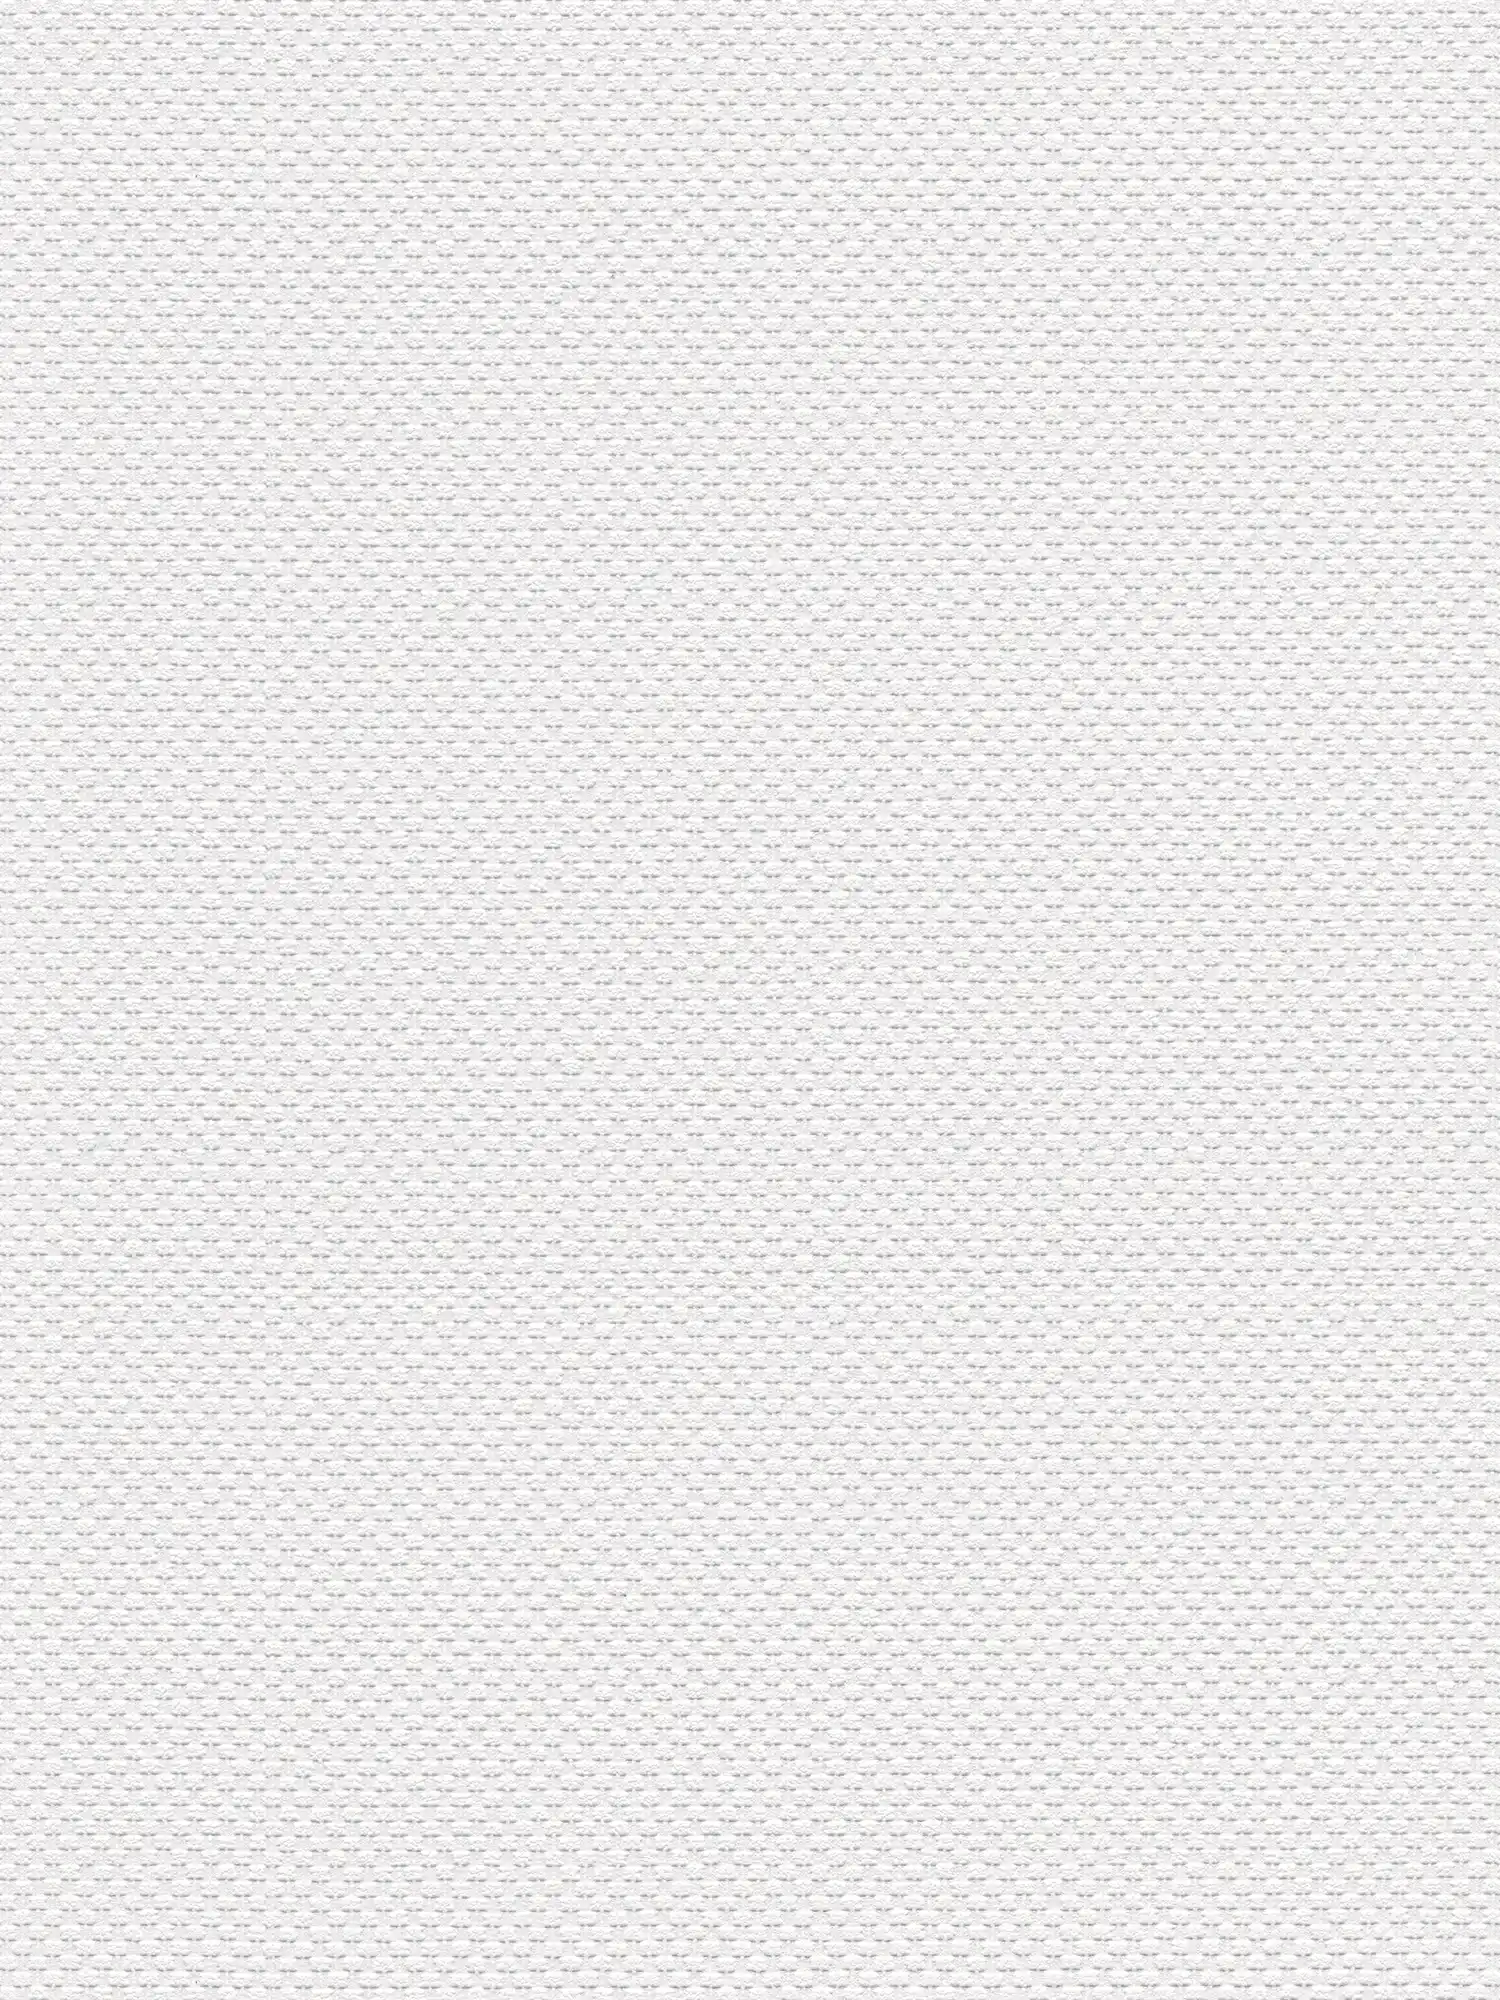 Unifarbene Papiertapete mit Gewebe-Look – Weiß
